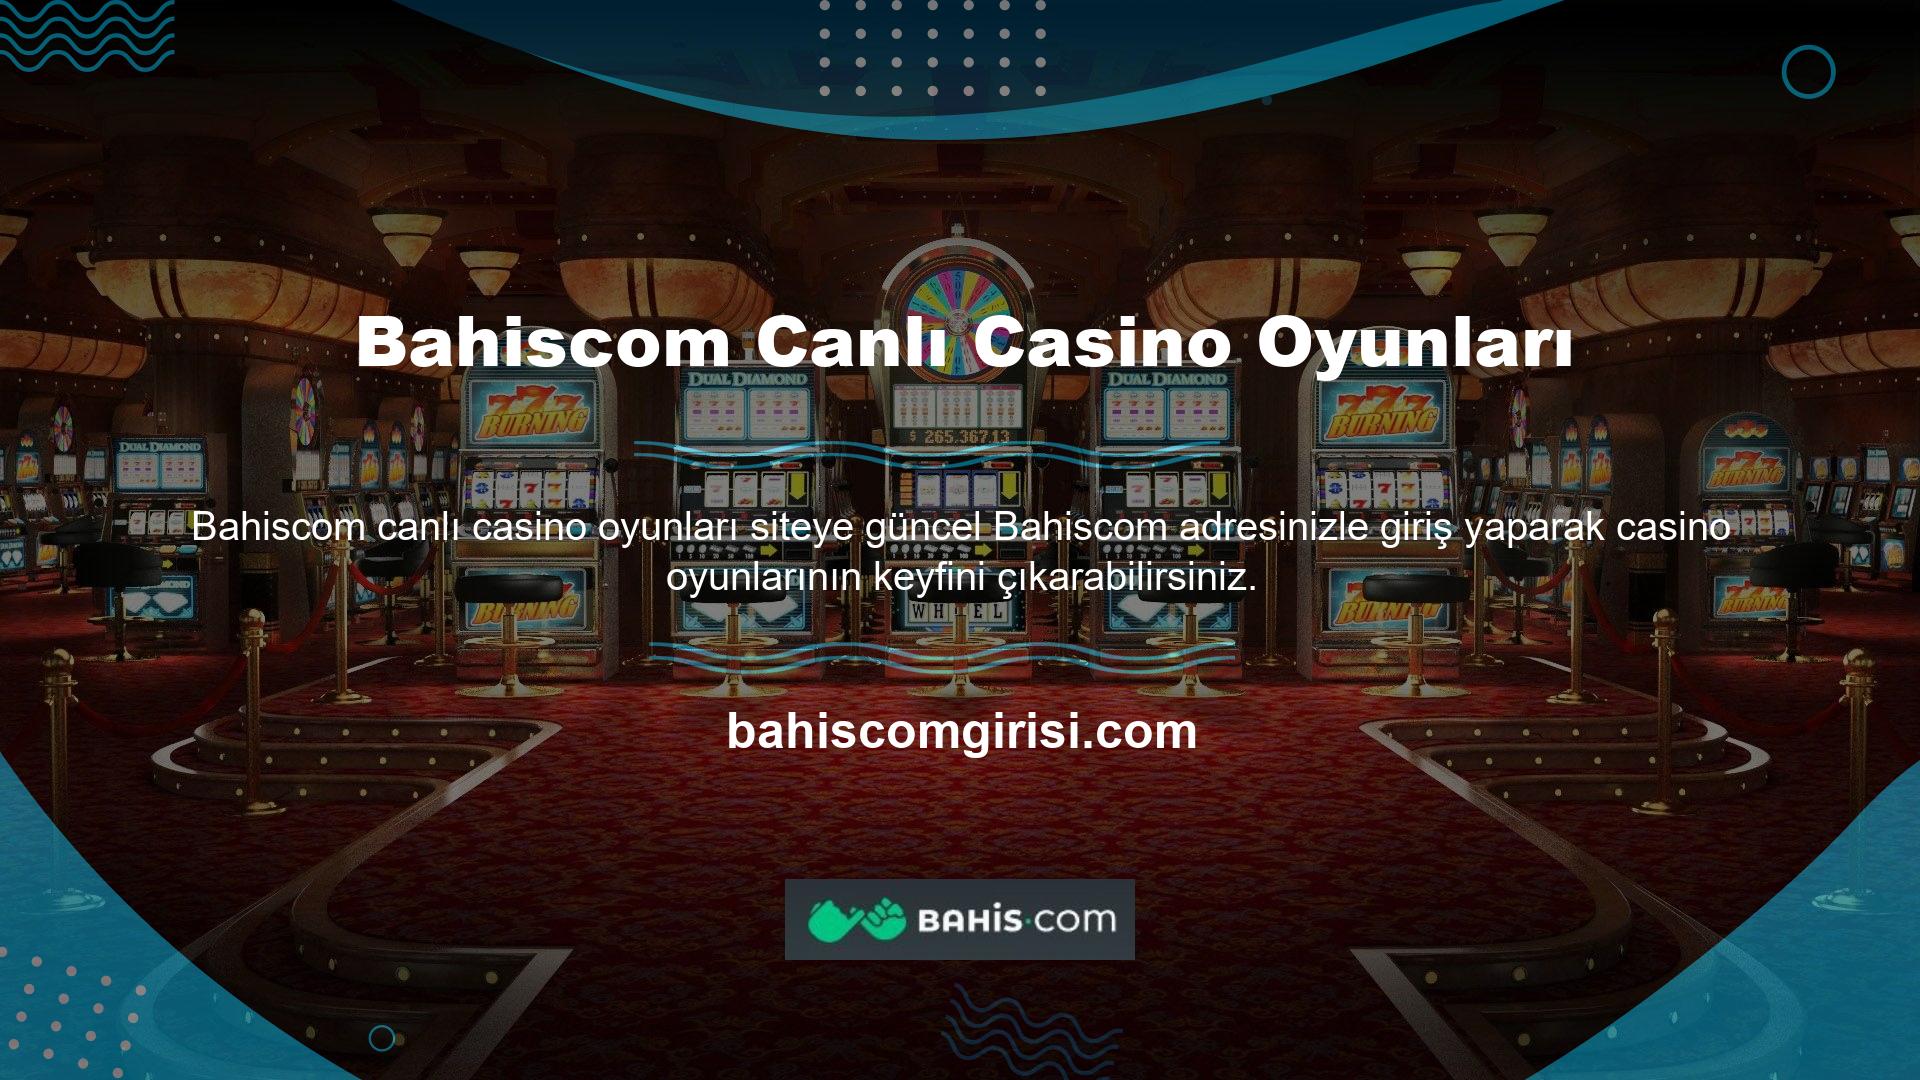 Bahiscom Bahis Siteleri üyeleri sadece Bahiscom Casino'da değil, Canlı Casino aracılığıyla da çok güzel bonuslar alıyor